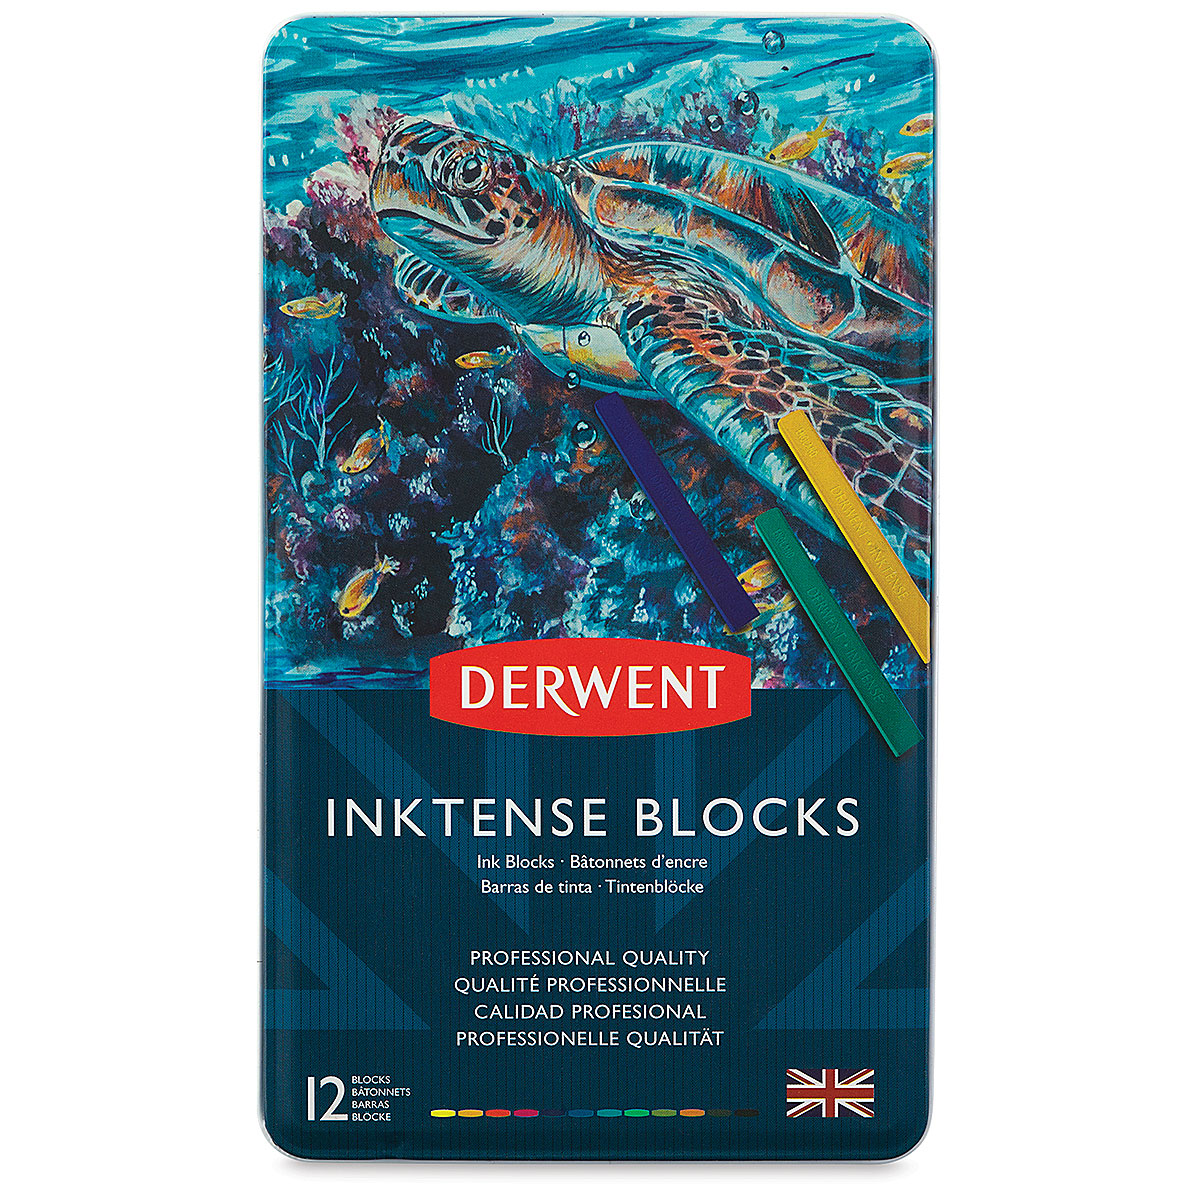 Derwent Inktense Block Set of 12 in a Tin